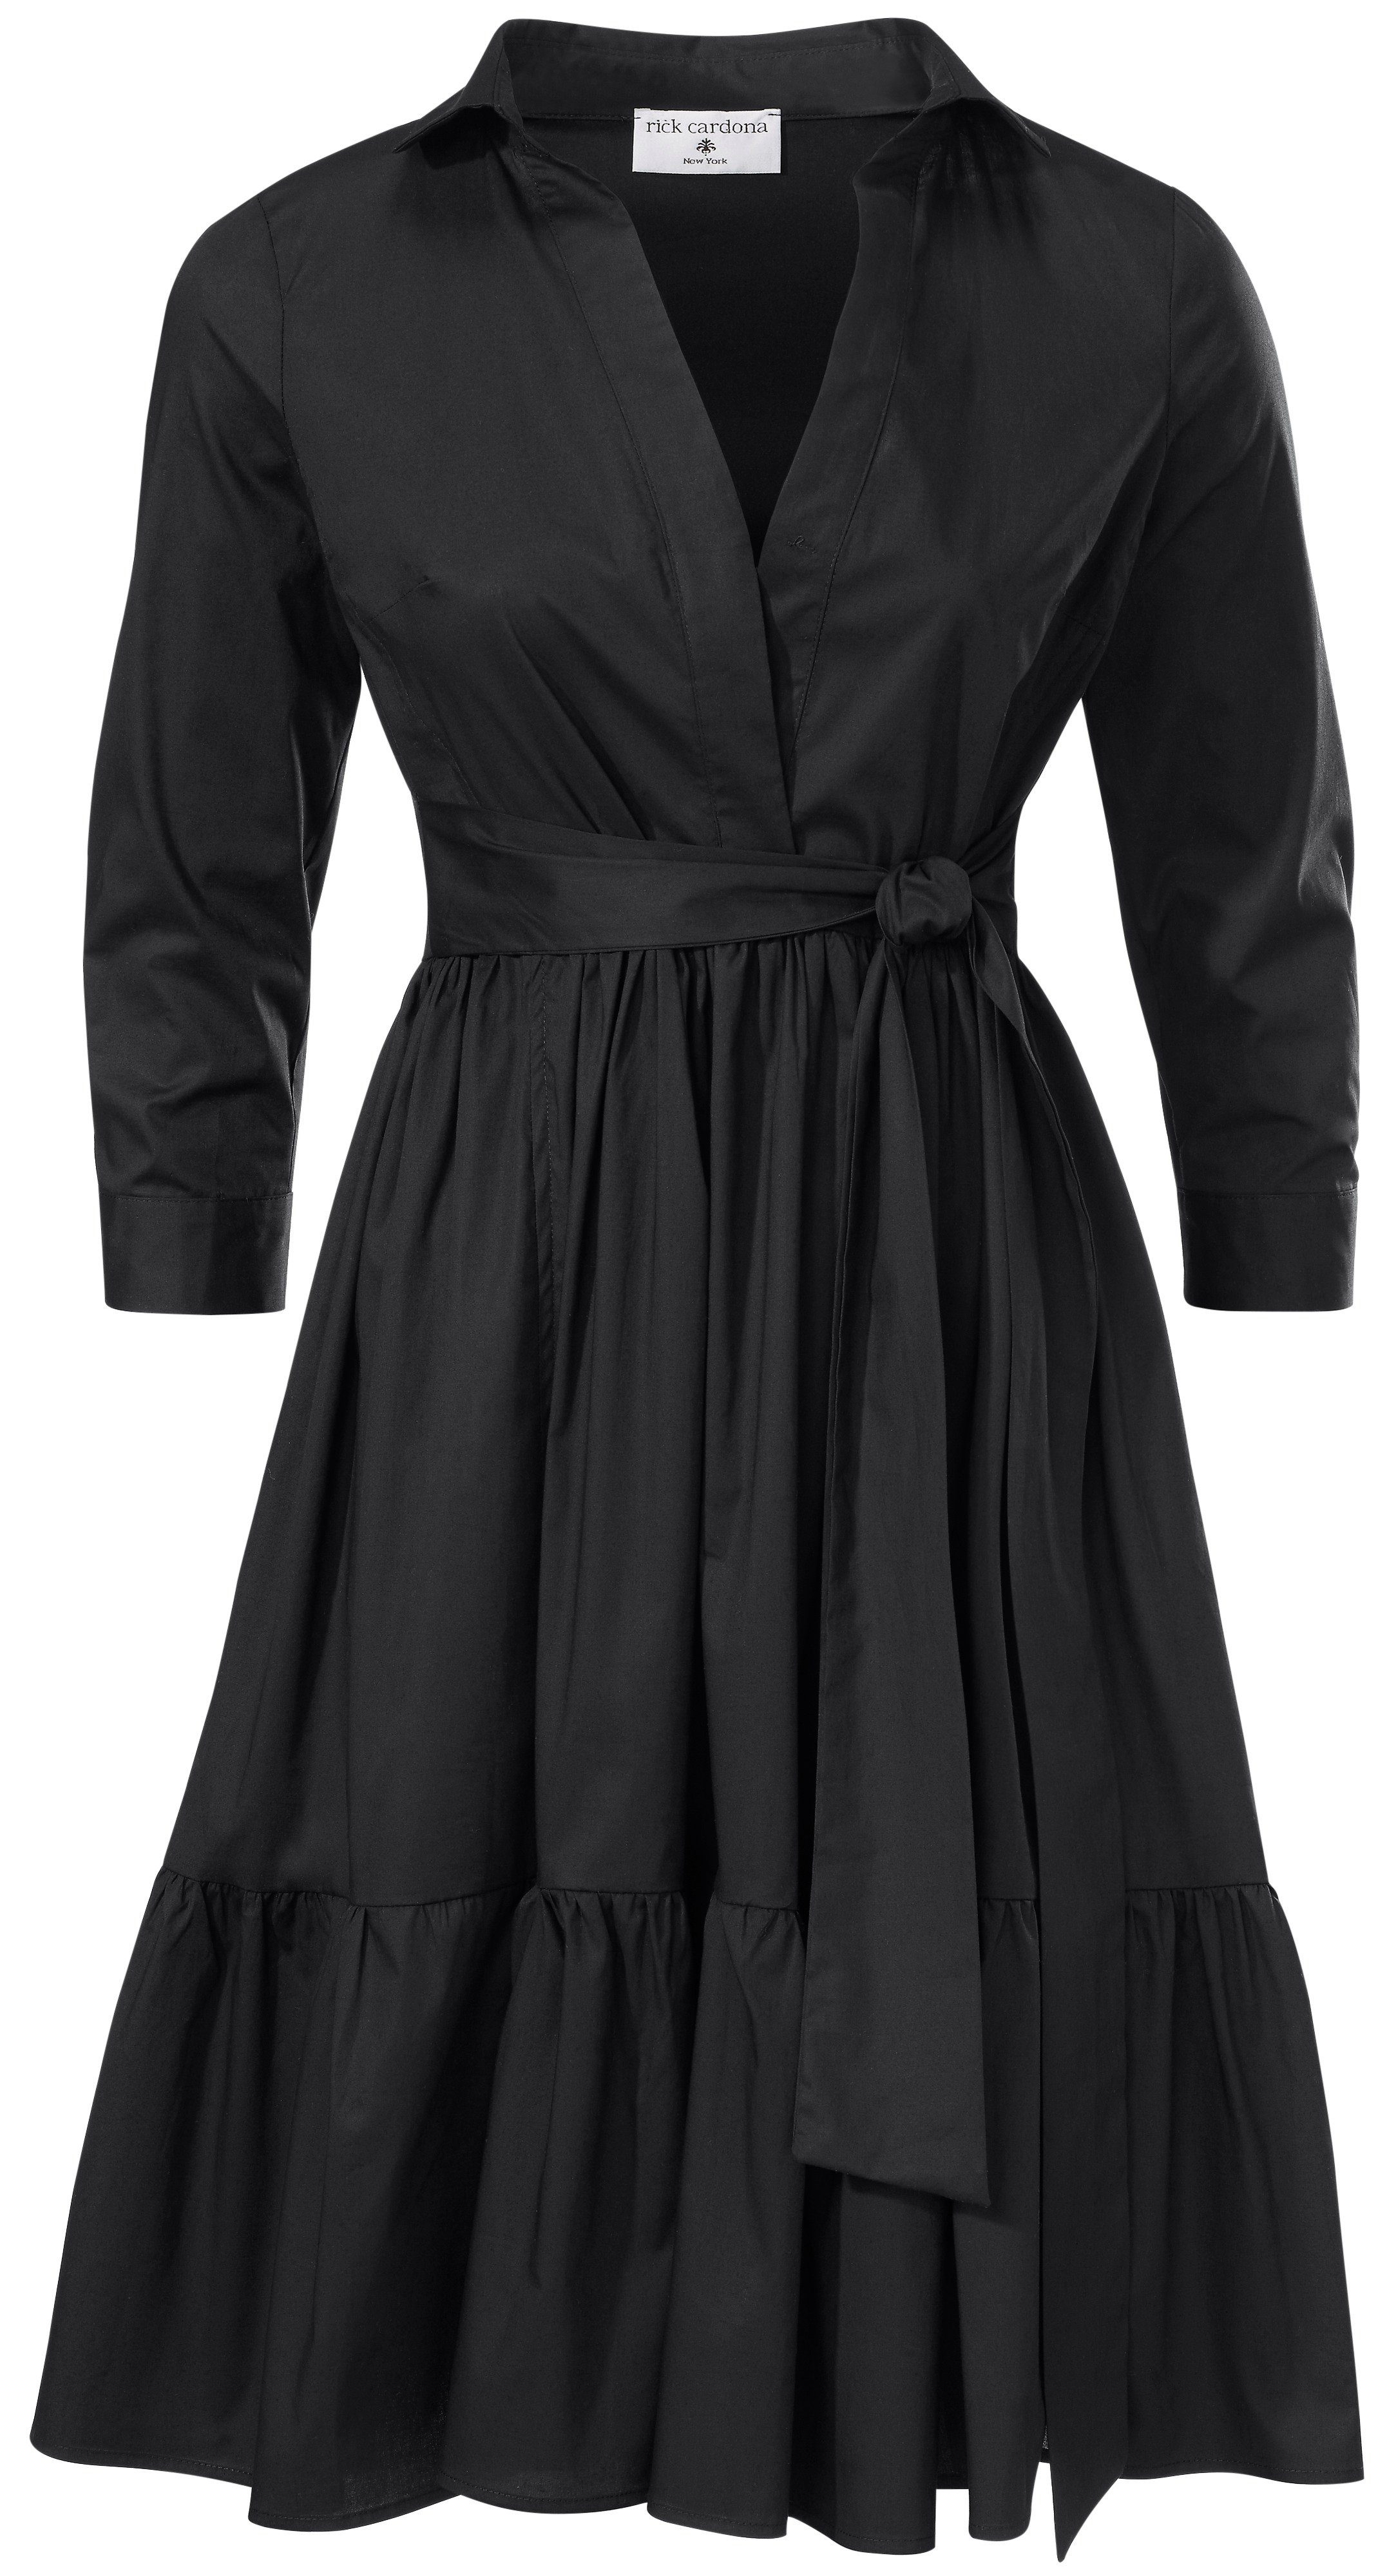 jurk met overhemdkraag zwart